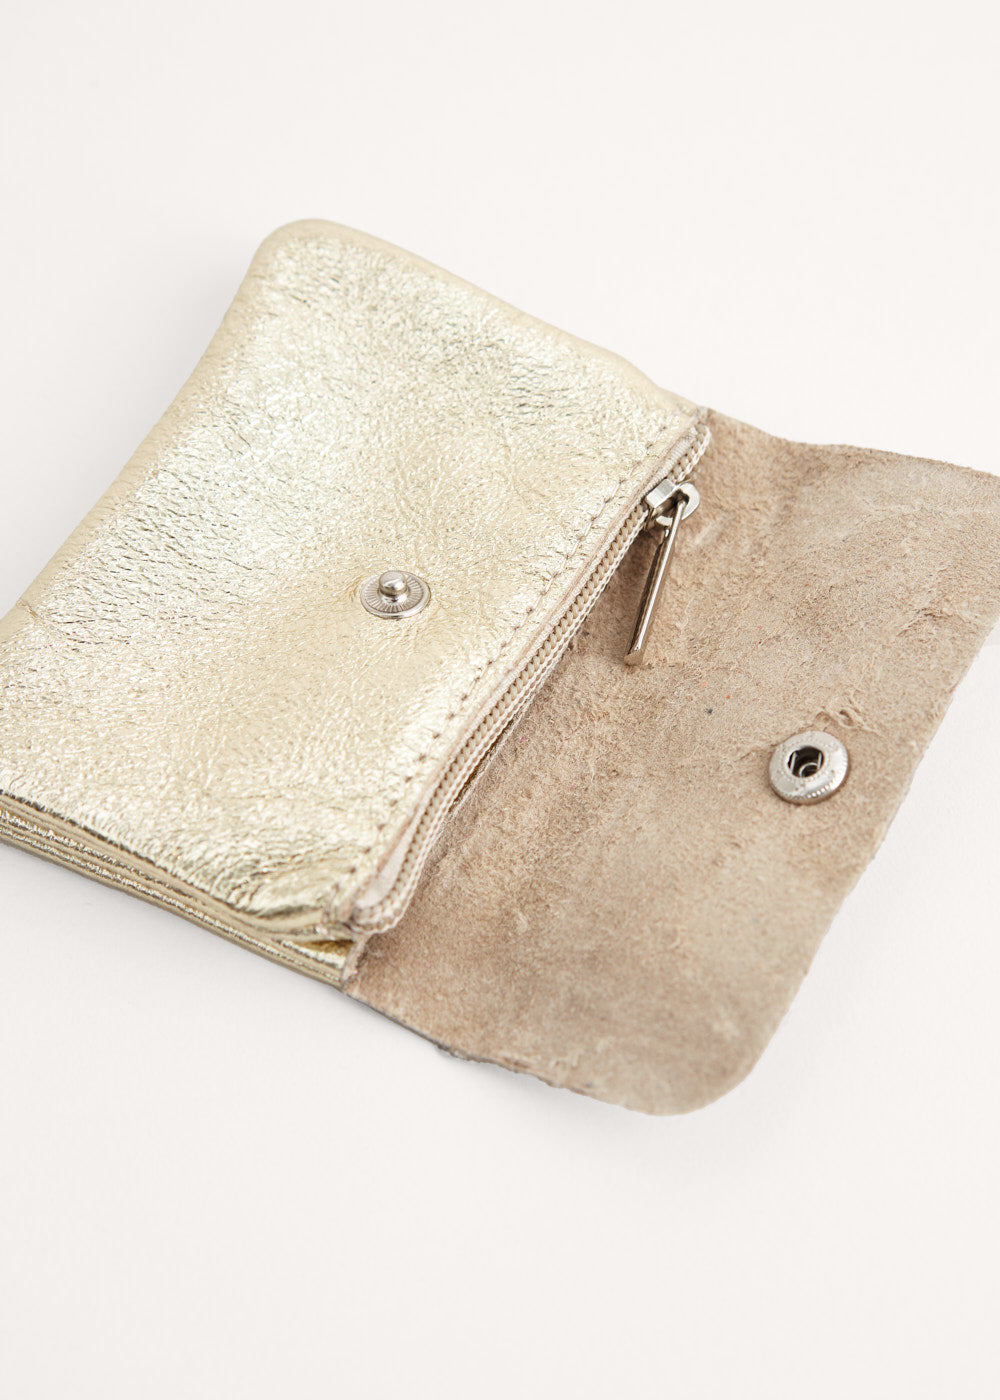 ALDO Black Galilini Dome Satchel Handbag Purse White And Gold Accents | eBay